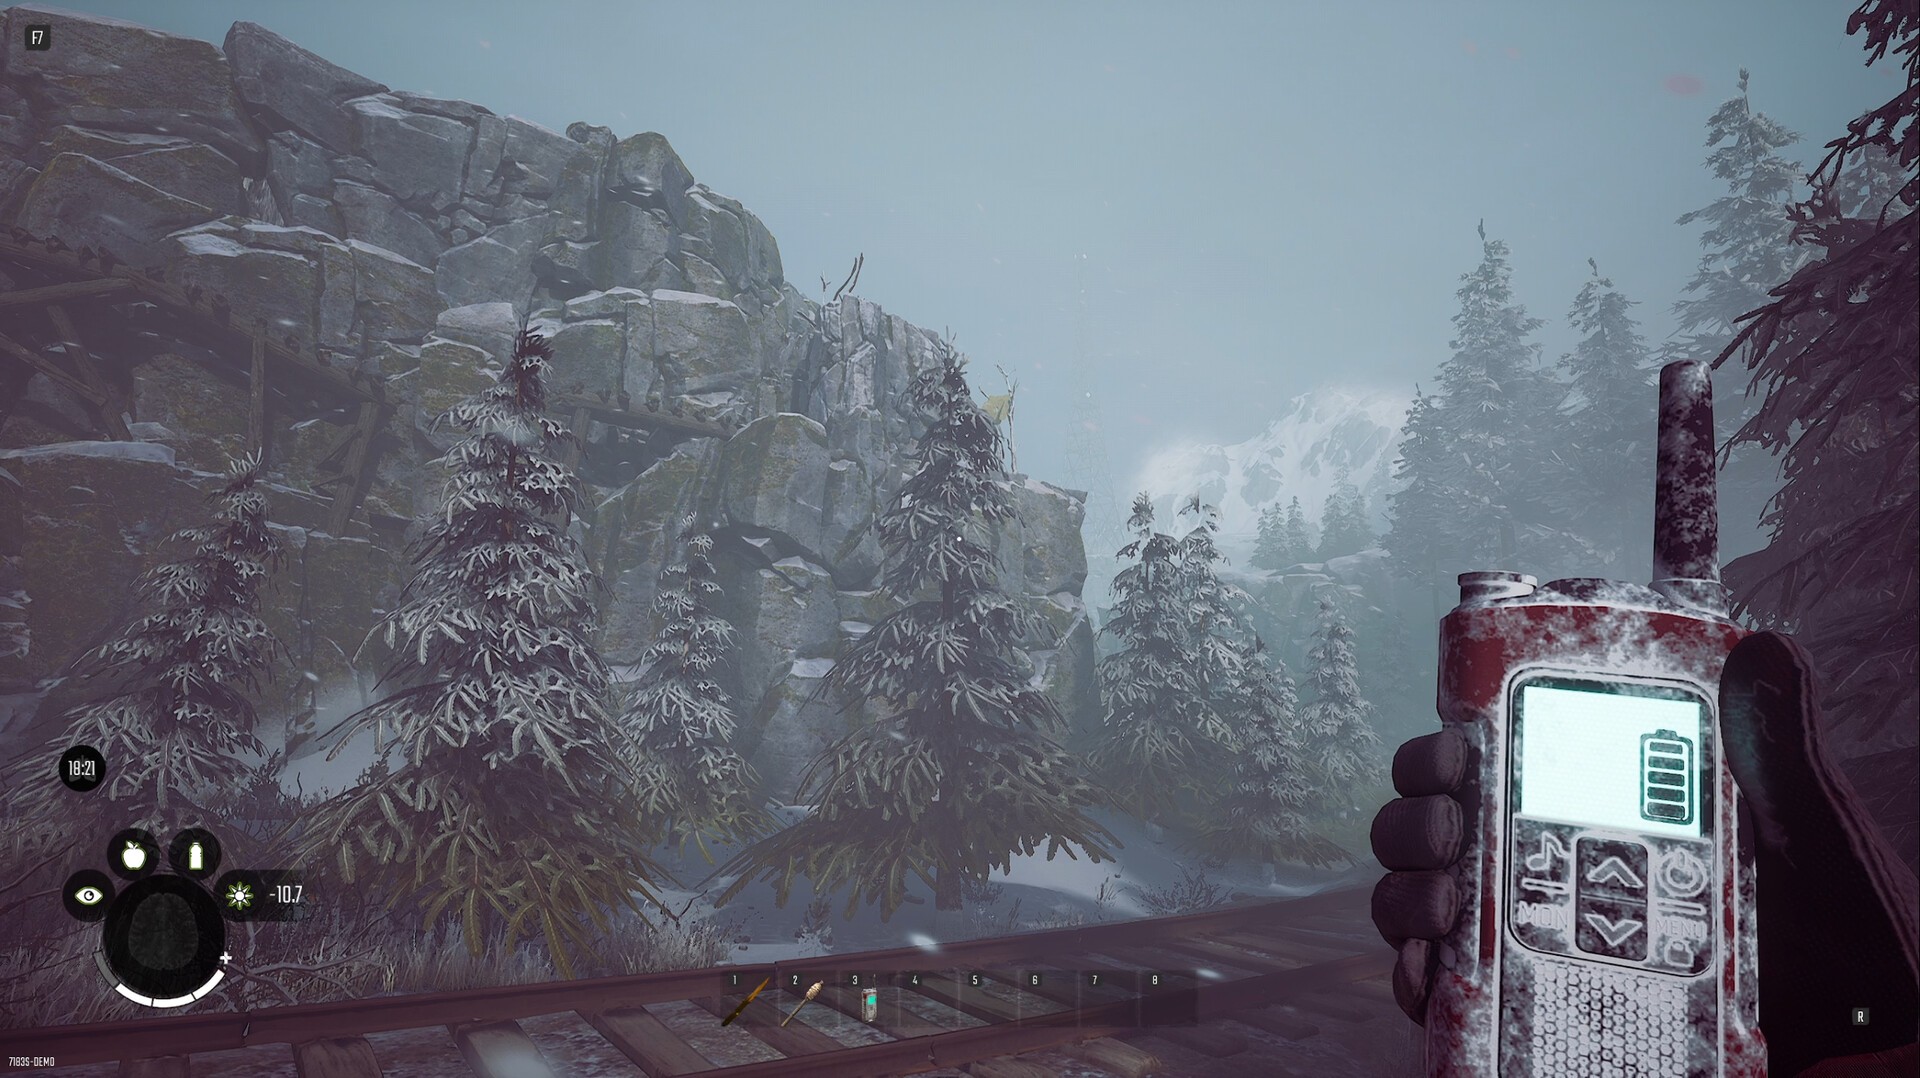 Winter Survival on Steam